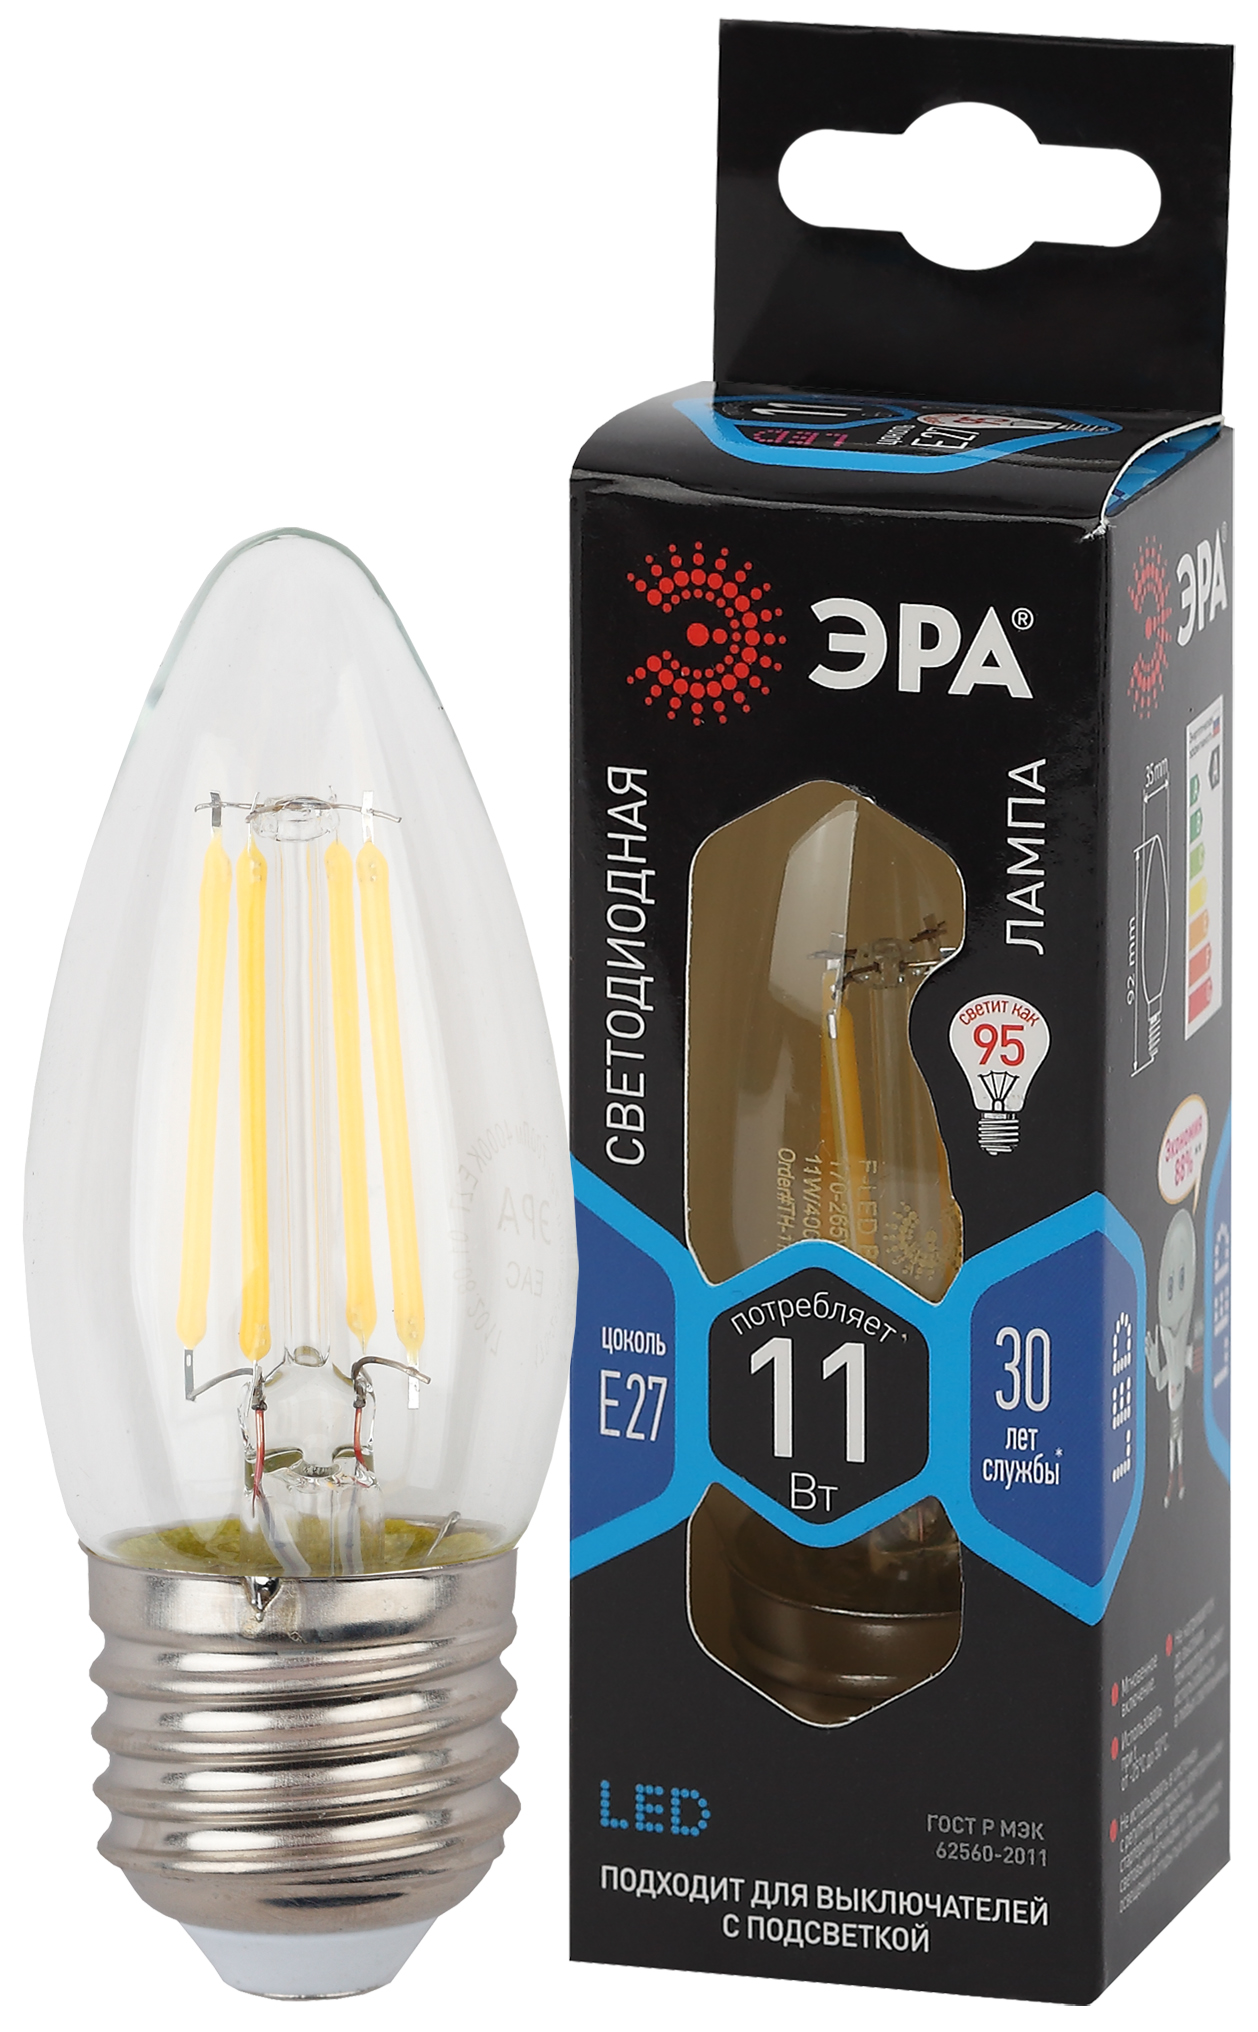 F-LED B35-11w-840-E27 ЭРА (филамент, свеча, 11Вт, нейтр, E27) (10/100/5000)